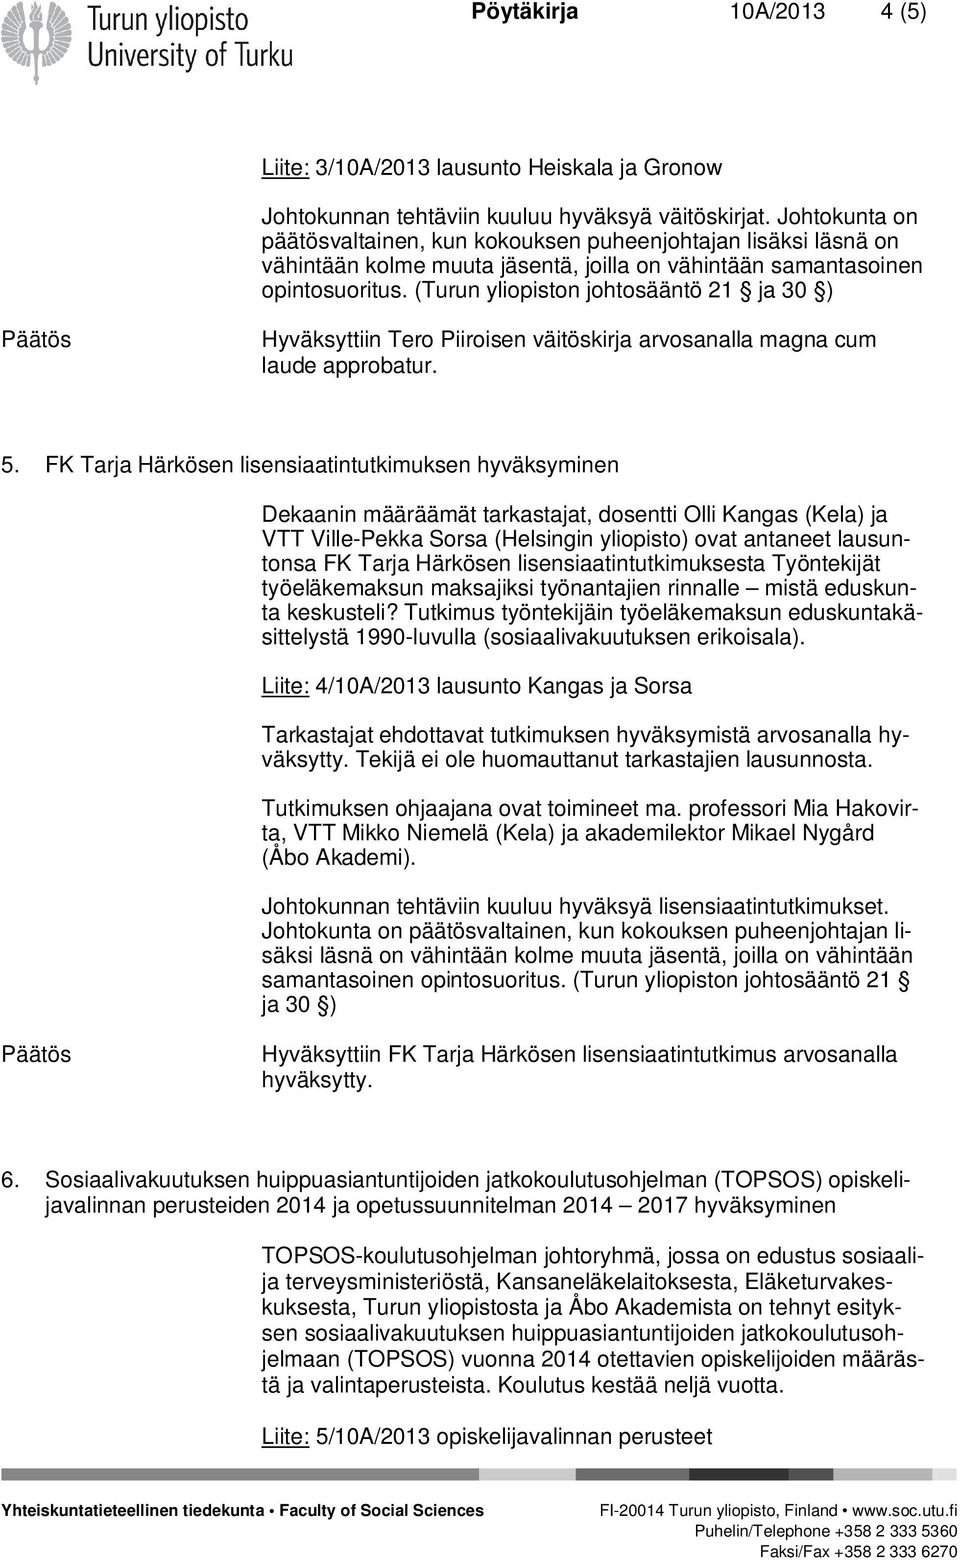 (Turun yliopiston johtosääntö 21 ja 30 ) Hyväksyttiin Tero Piiroisen väitöskirja arvosanalla magna cum laude approbatur. 5.